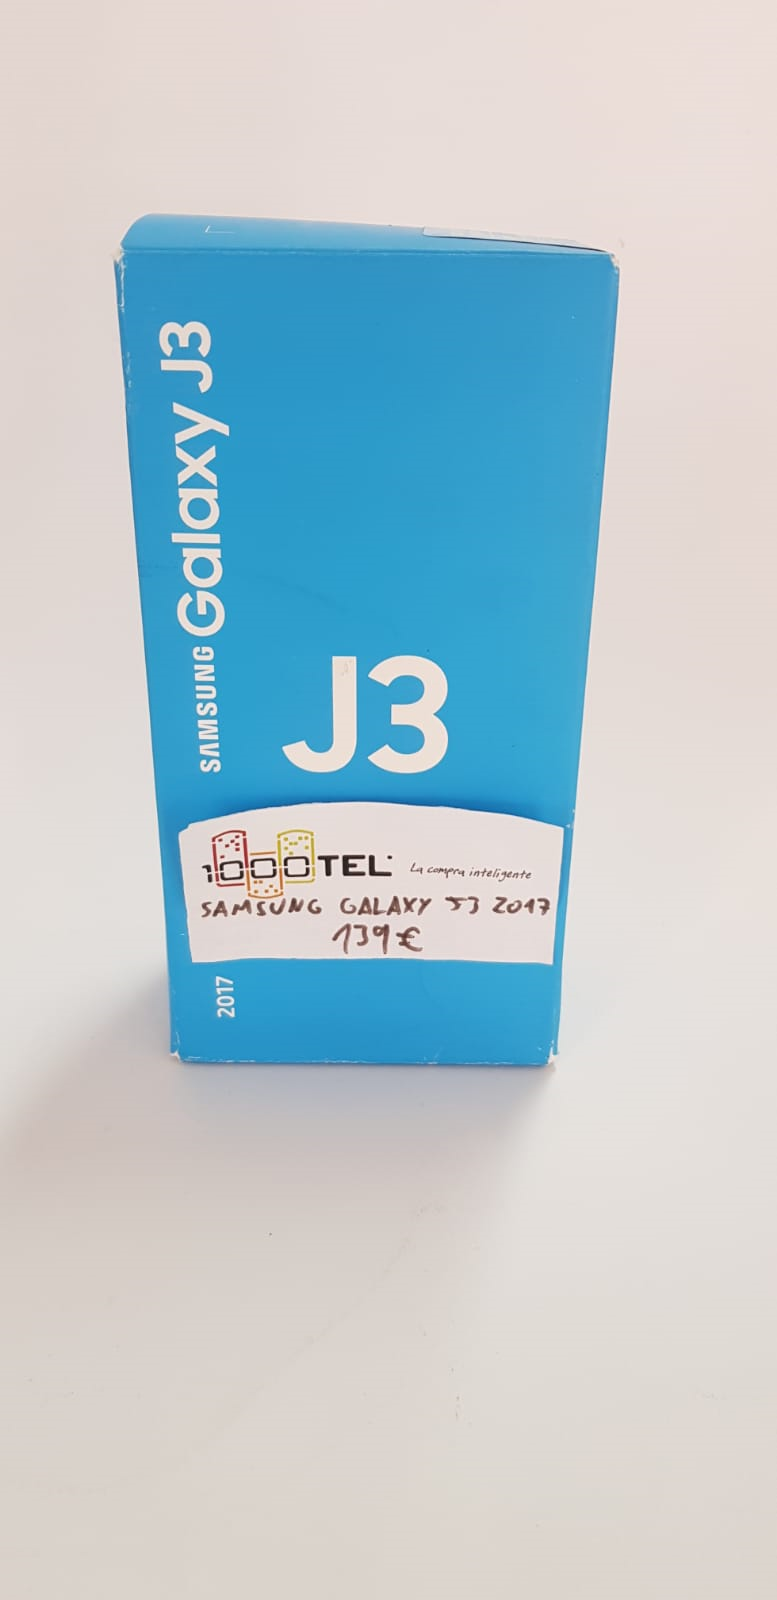 Samsung Galaxy J3 2017 #1